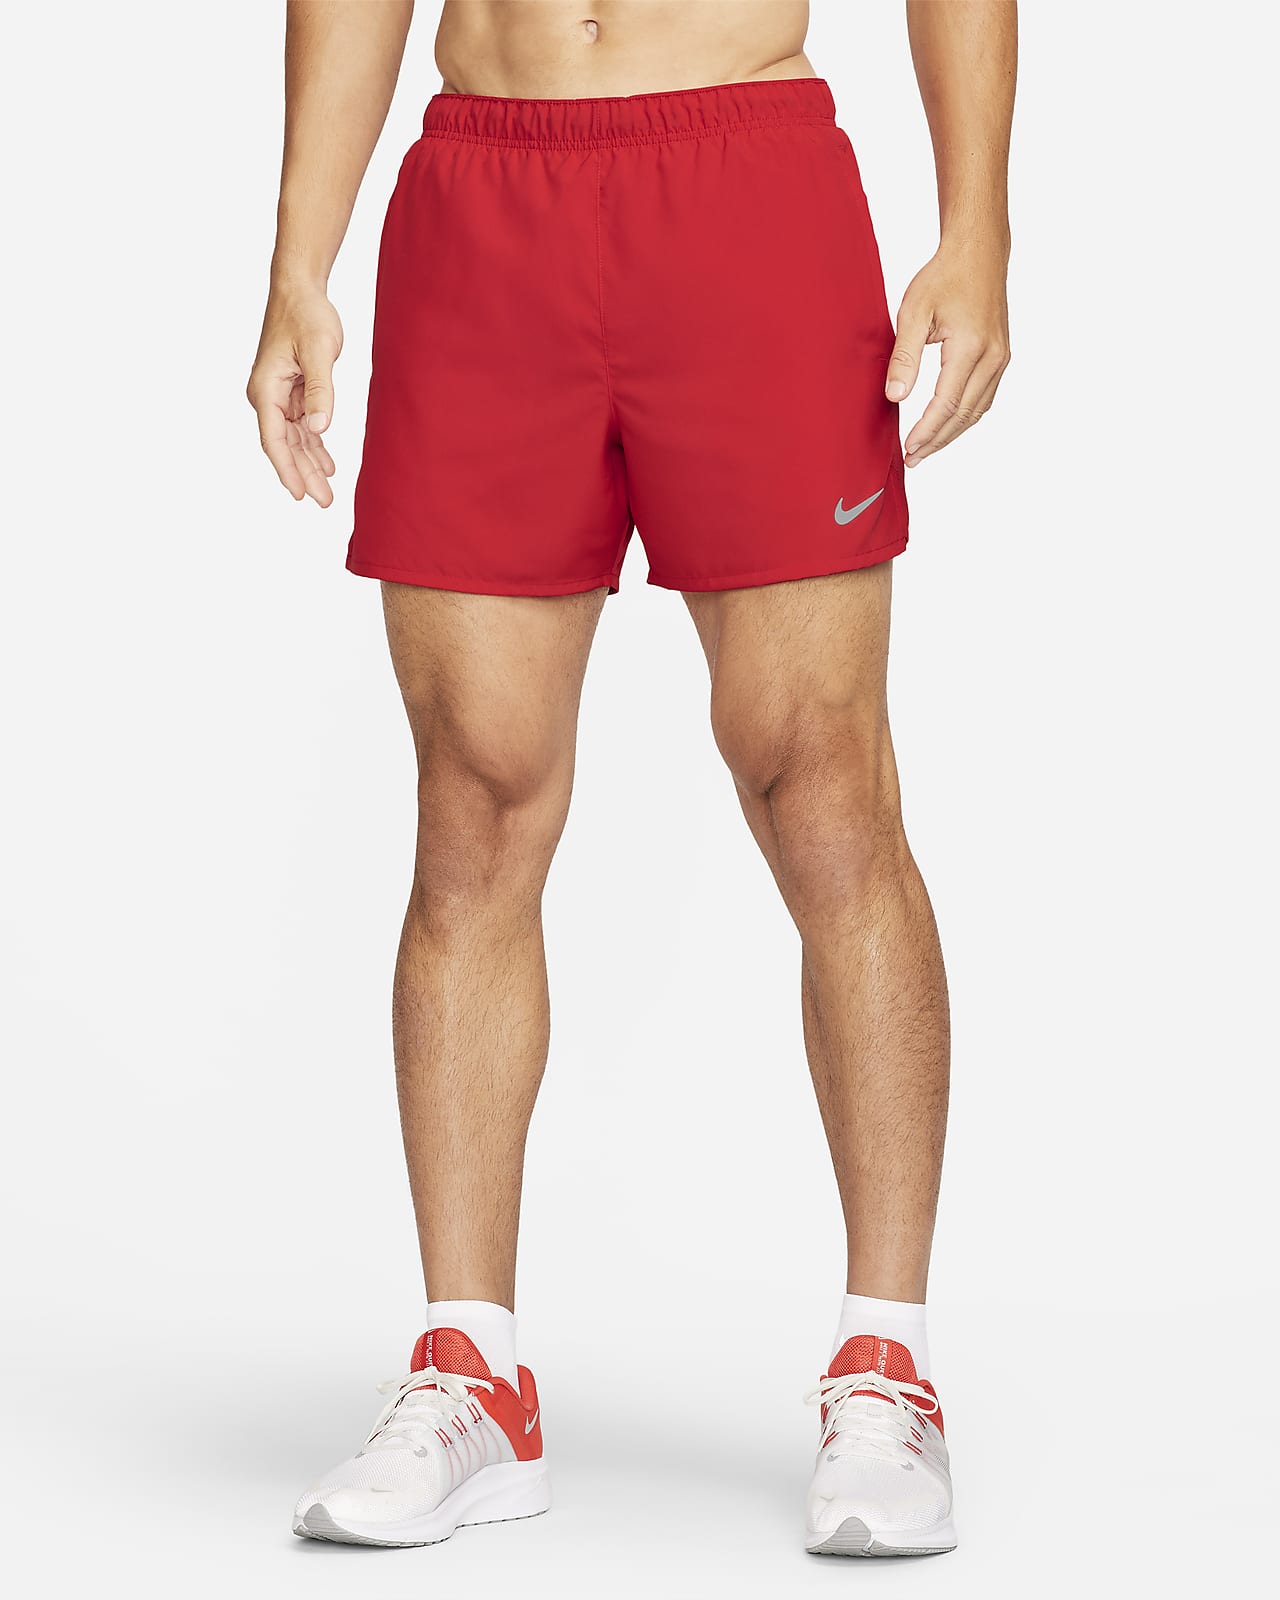 Short de running avec sous-short intégré 13 cm Dri-FIT Nike Challenger pour homme